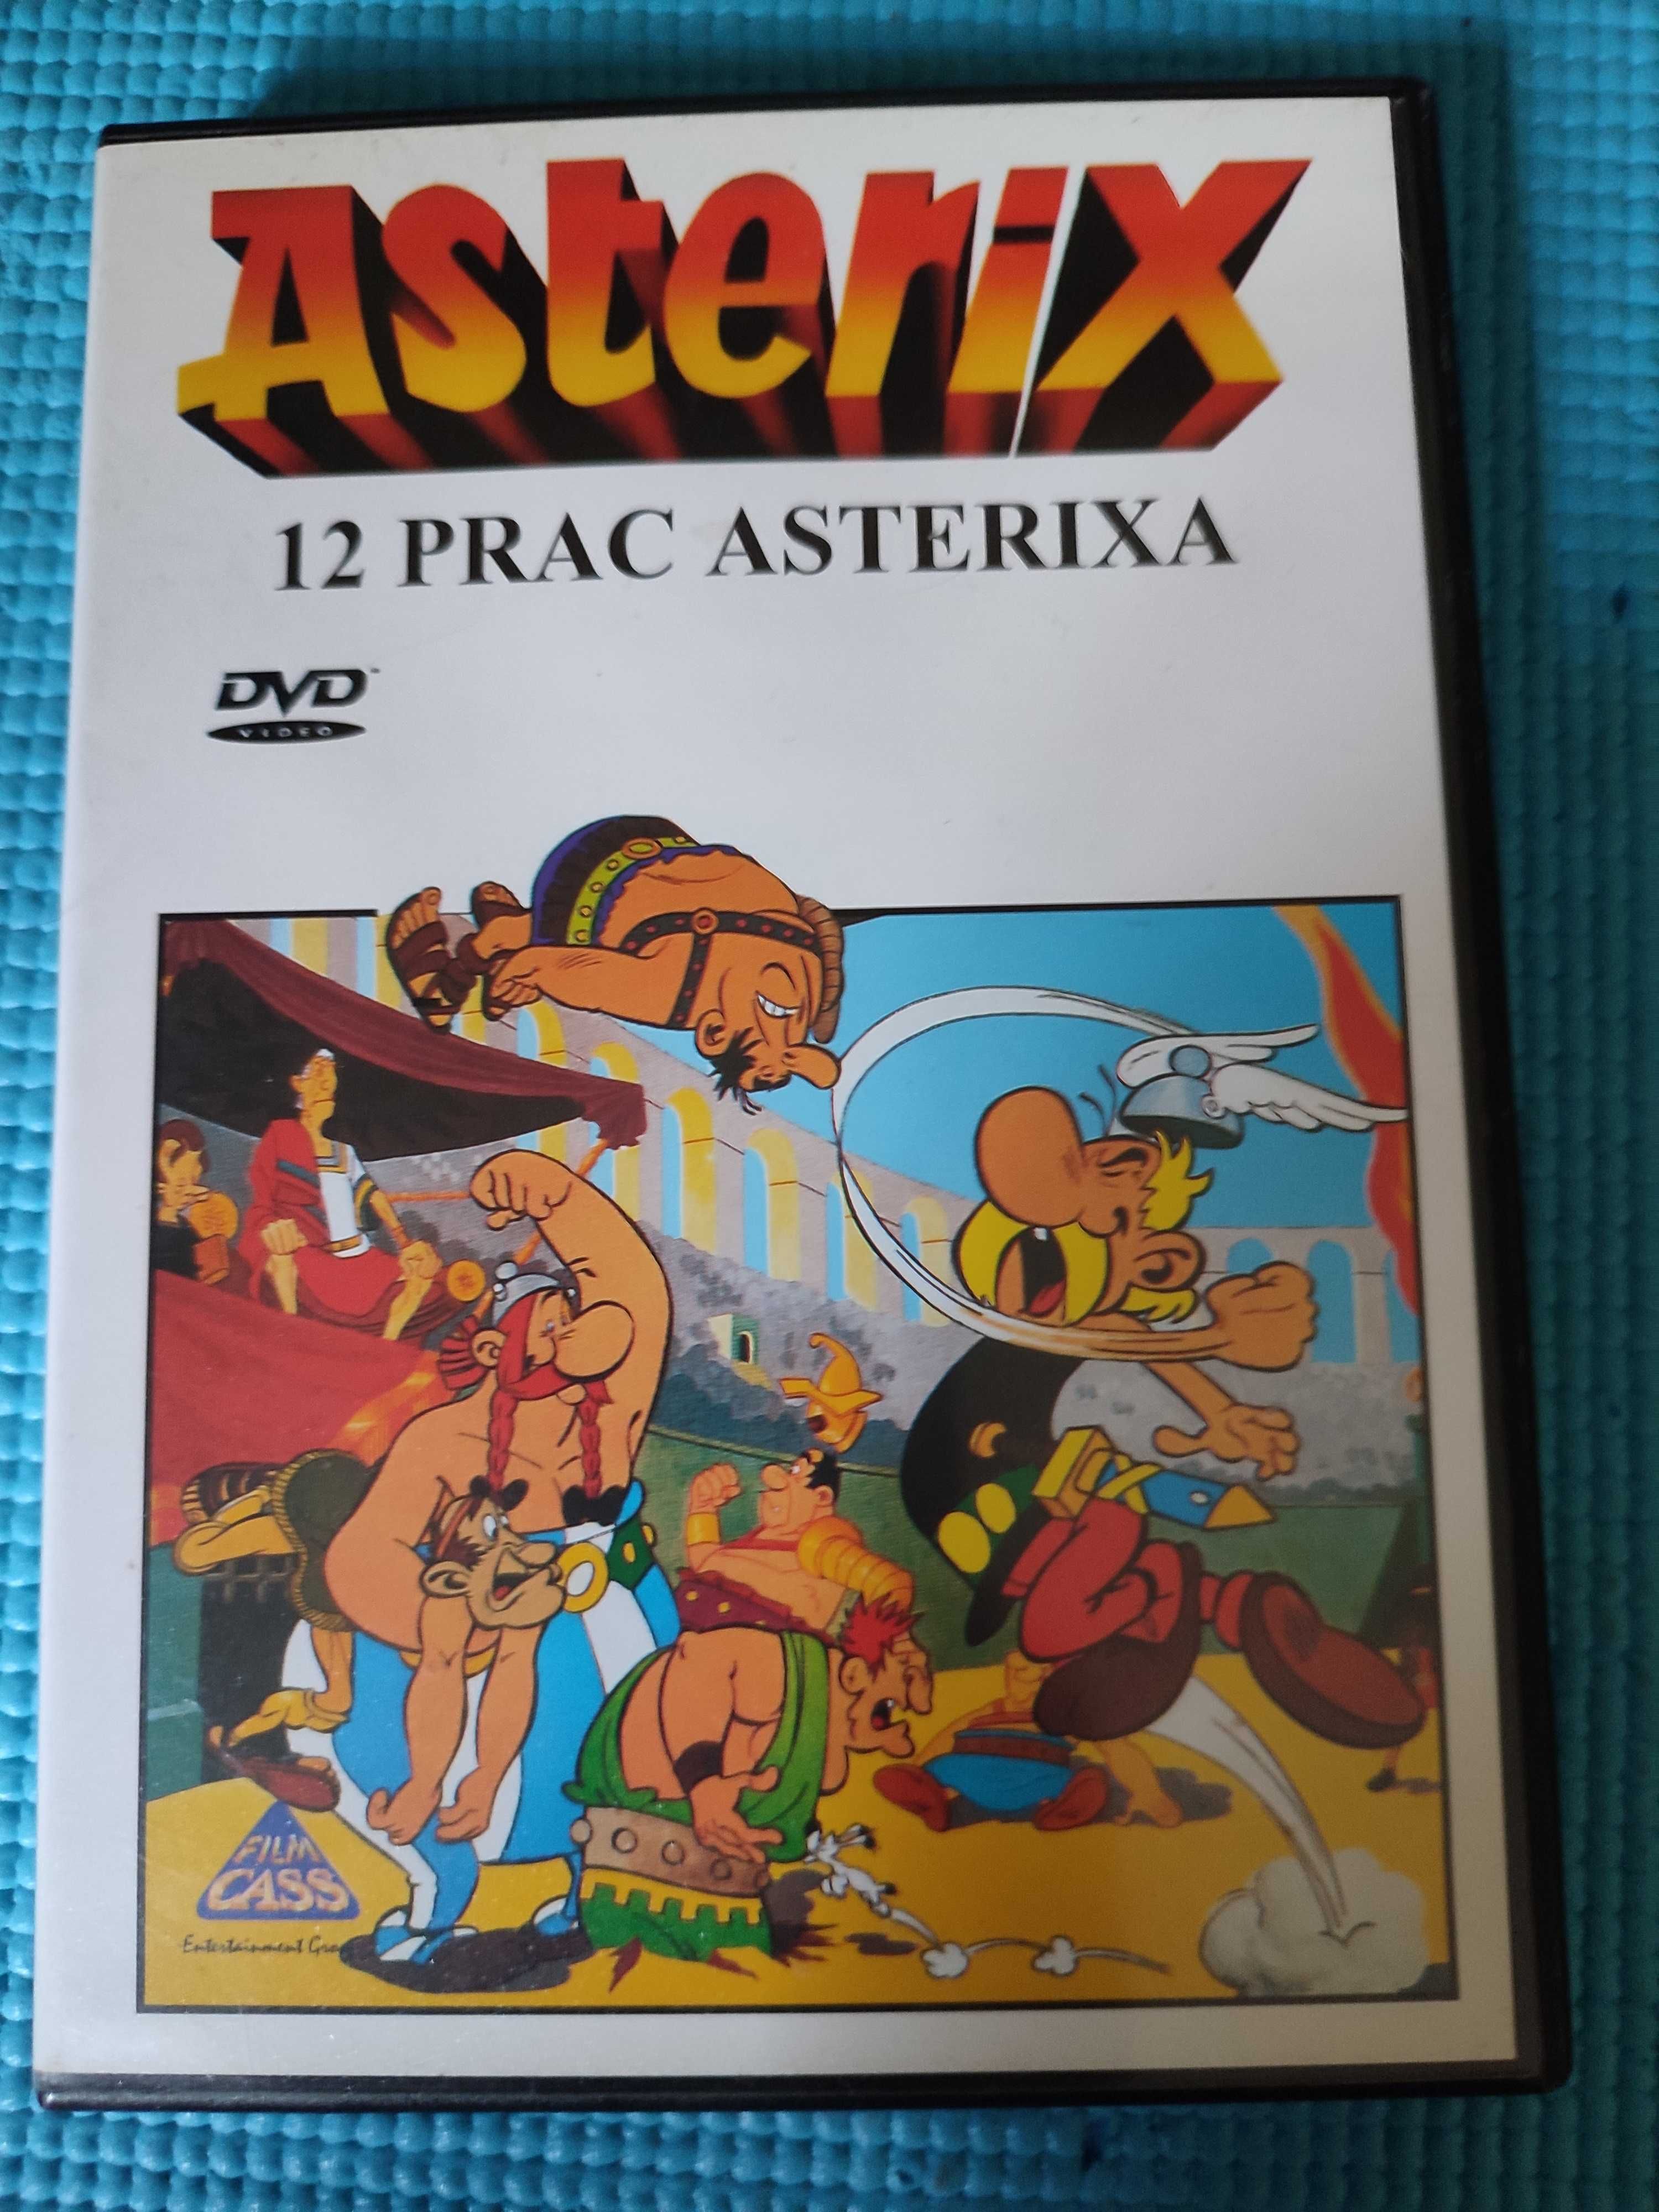 DVD "12 prac Asterixa"